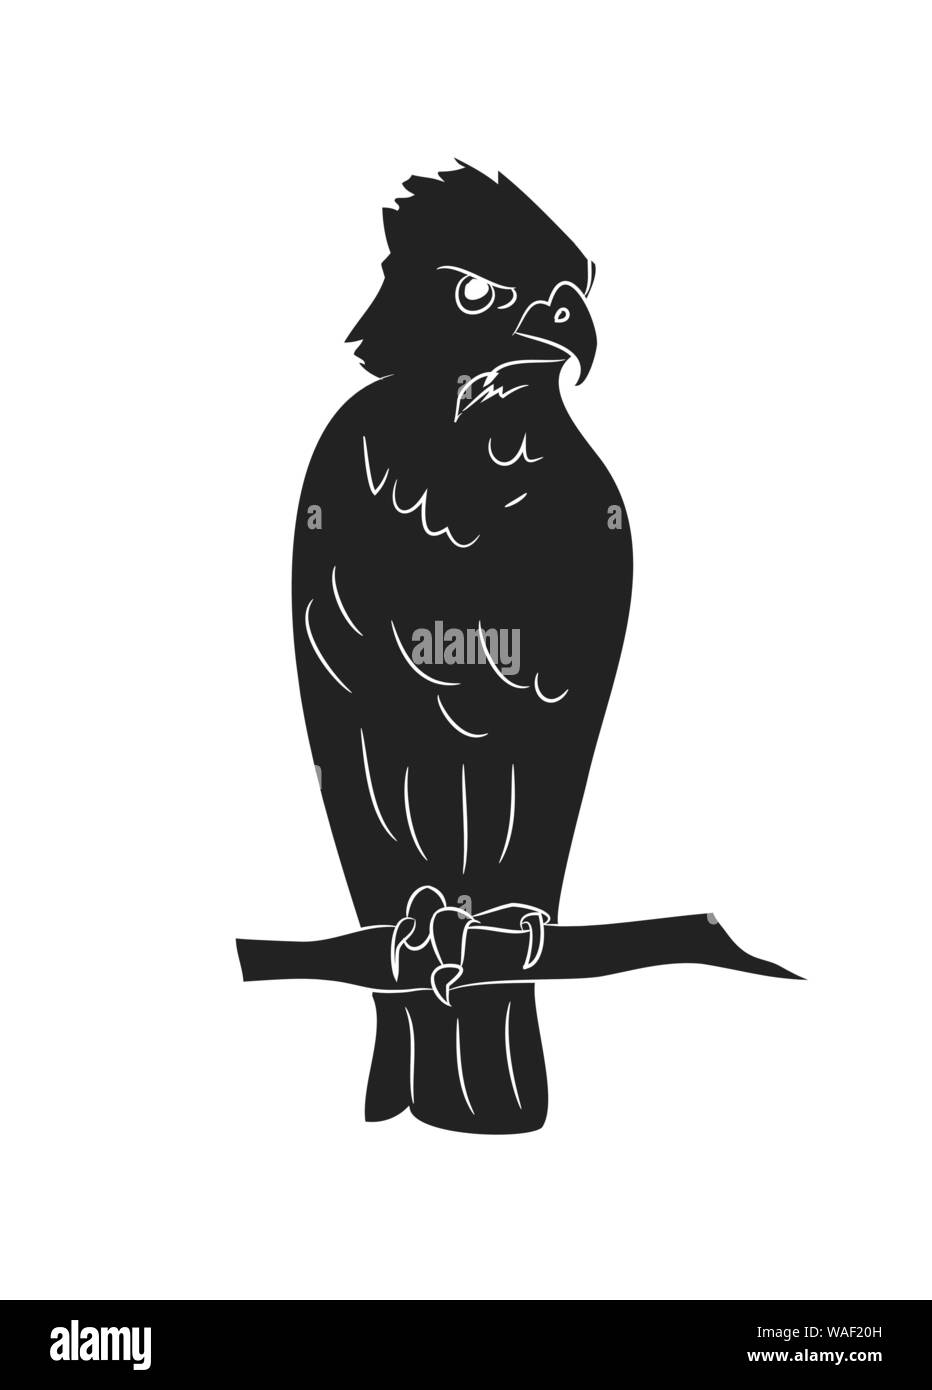 Siège de l'aigle silhouette de dessin, vecteur, fond blanc Illustration de Vecteur